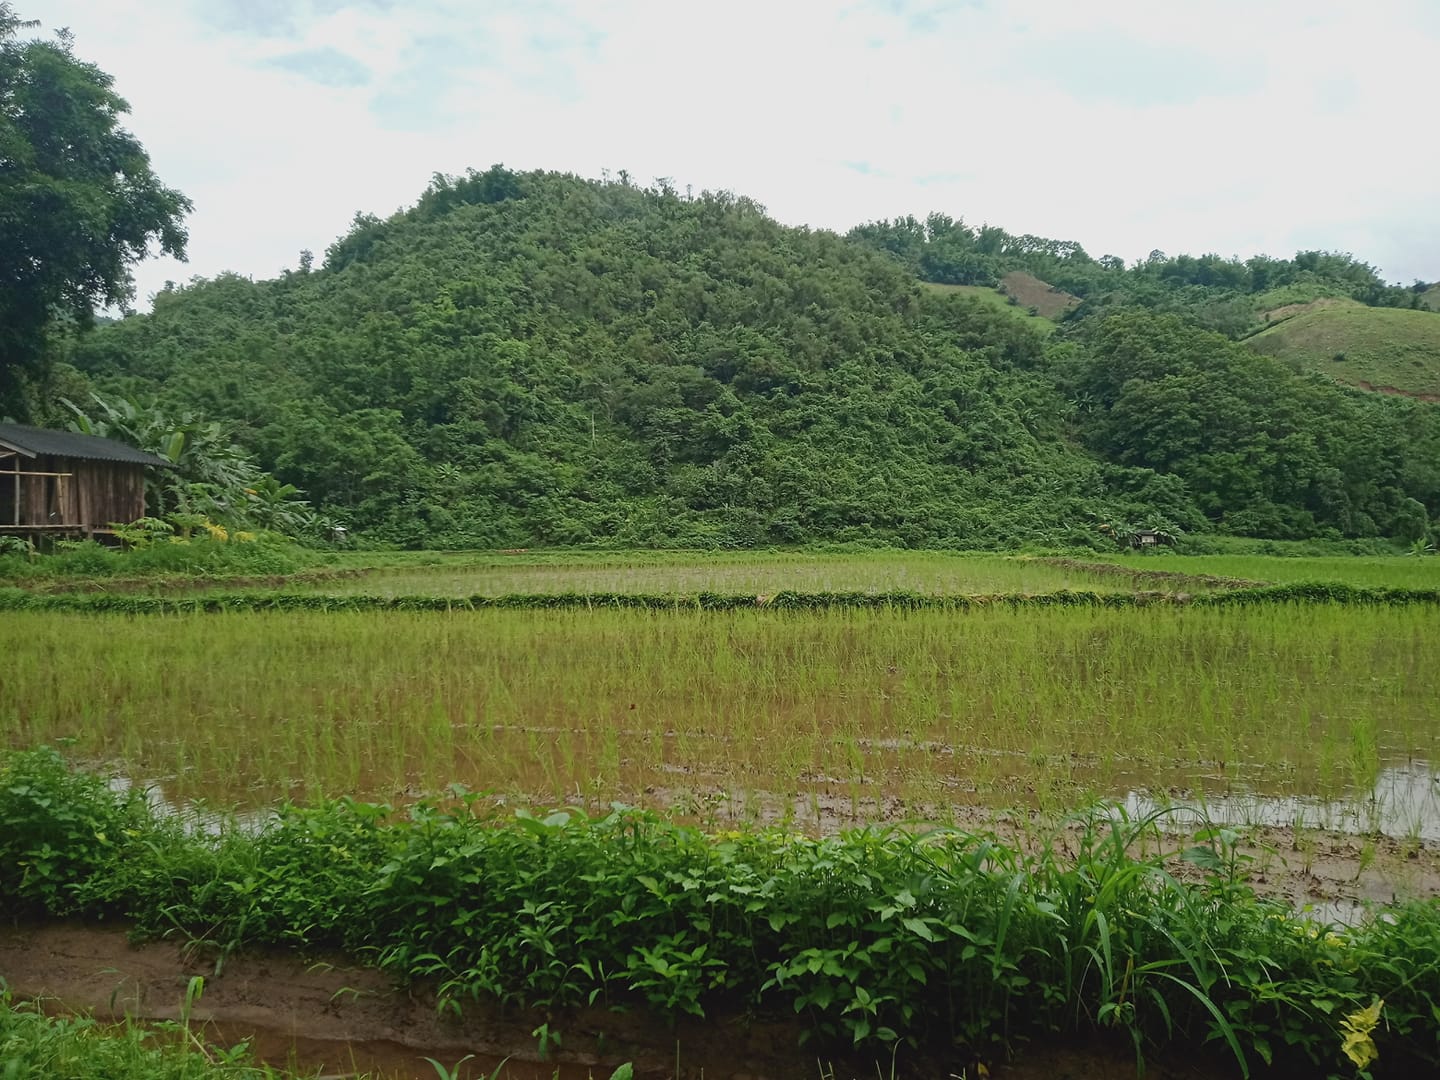 fondation heloise charruau thailande premier bilan cooperative agricole chez les karens